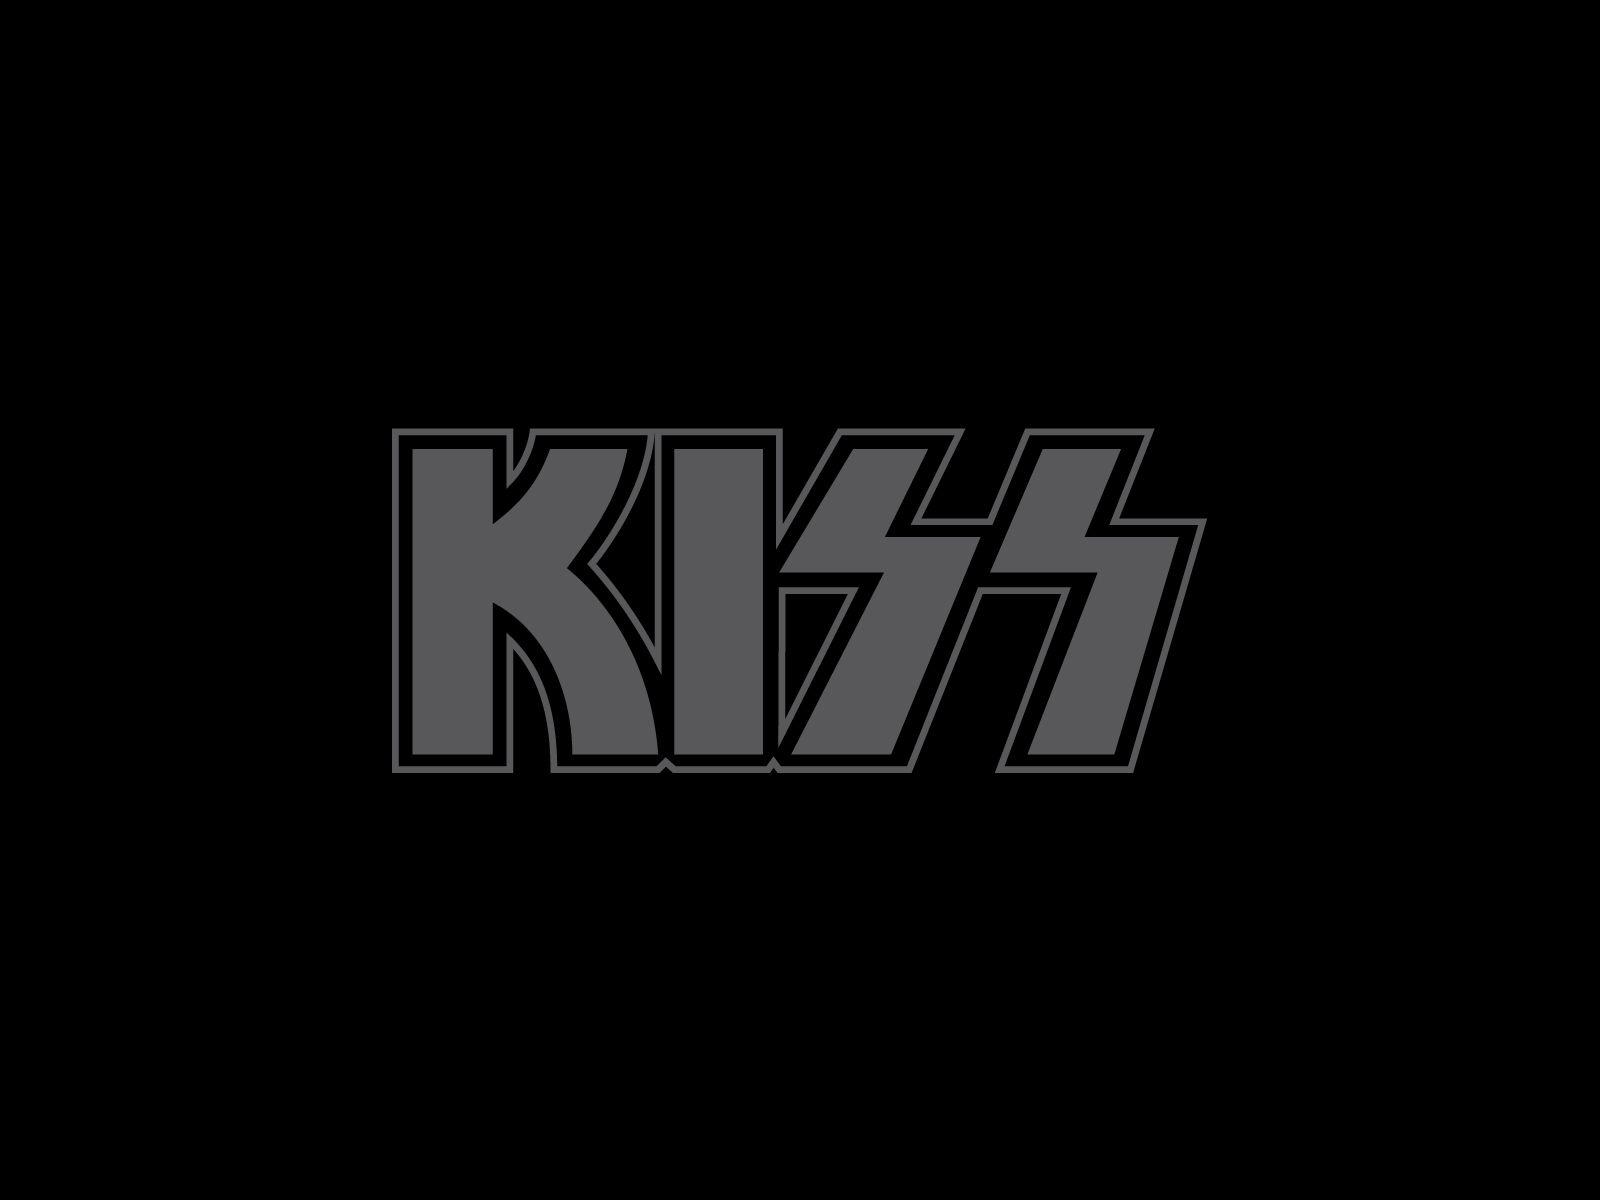 Kiss band logo and wallpaper. Band logos band logos, metal bands logos, punk bands logos